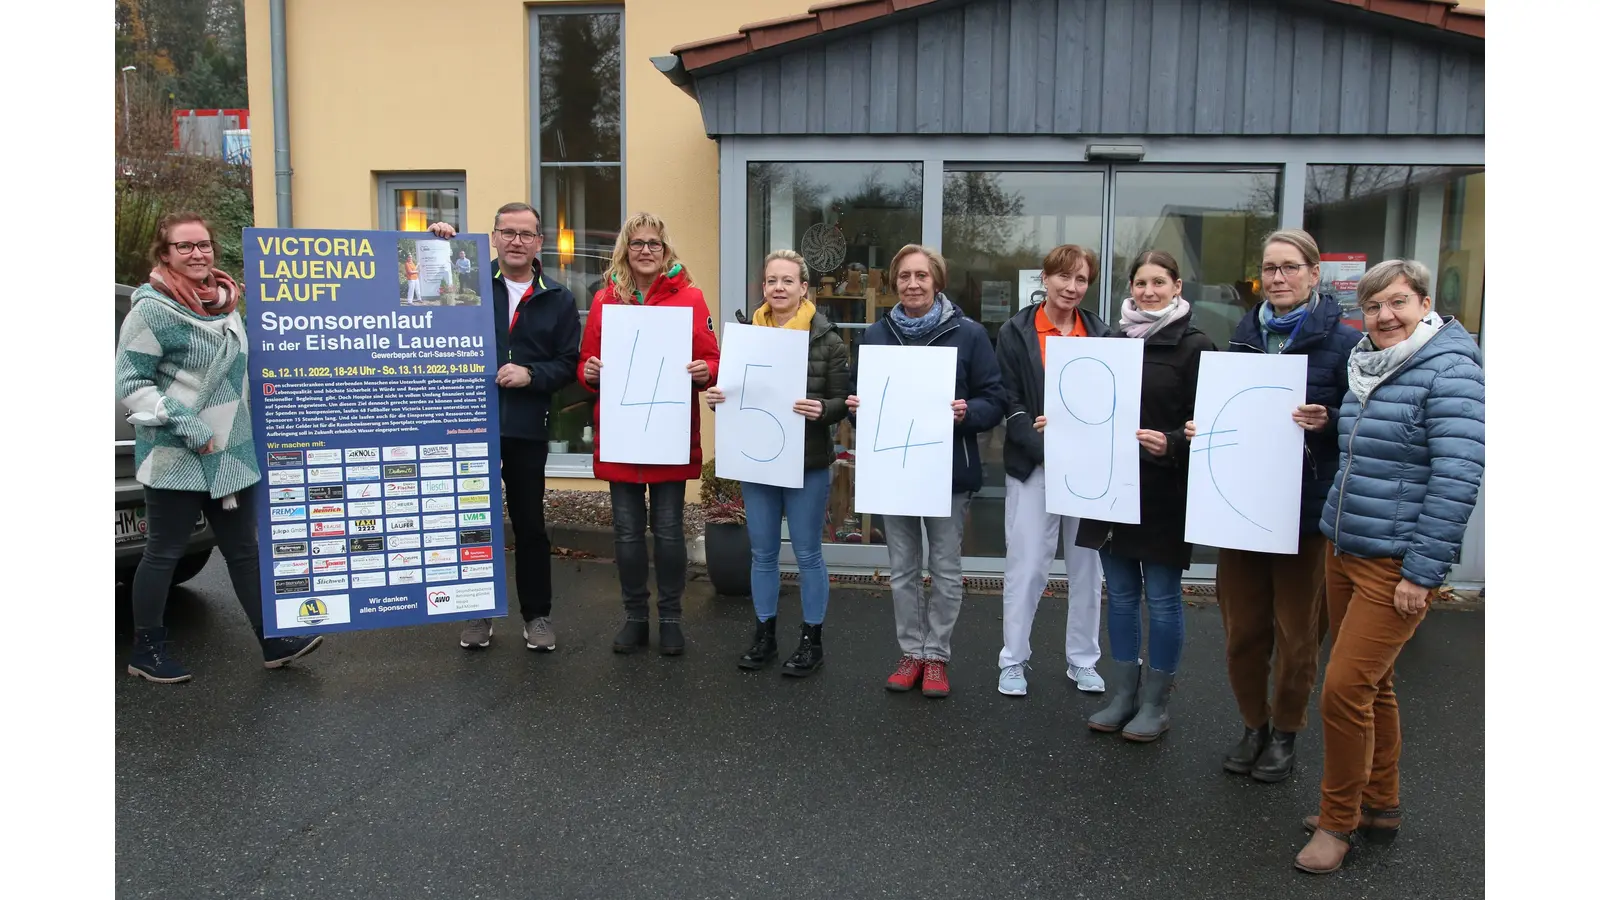 Die Vertreter des SV Victoria Lauenau übergeben die beim Sponsorenlauf erwirtschaftete Spende an das Hospiz-Team Bad Münder.  (Foto: Borchers, Bastian)